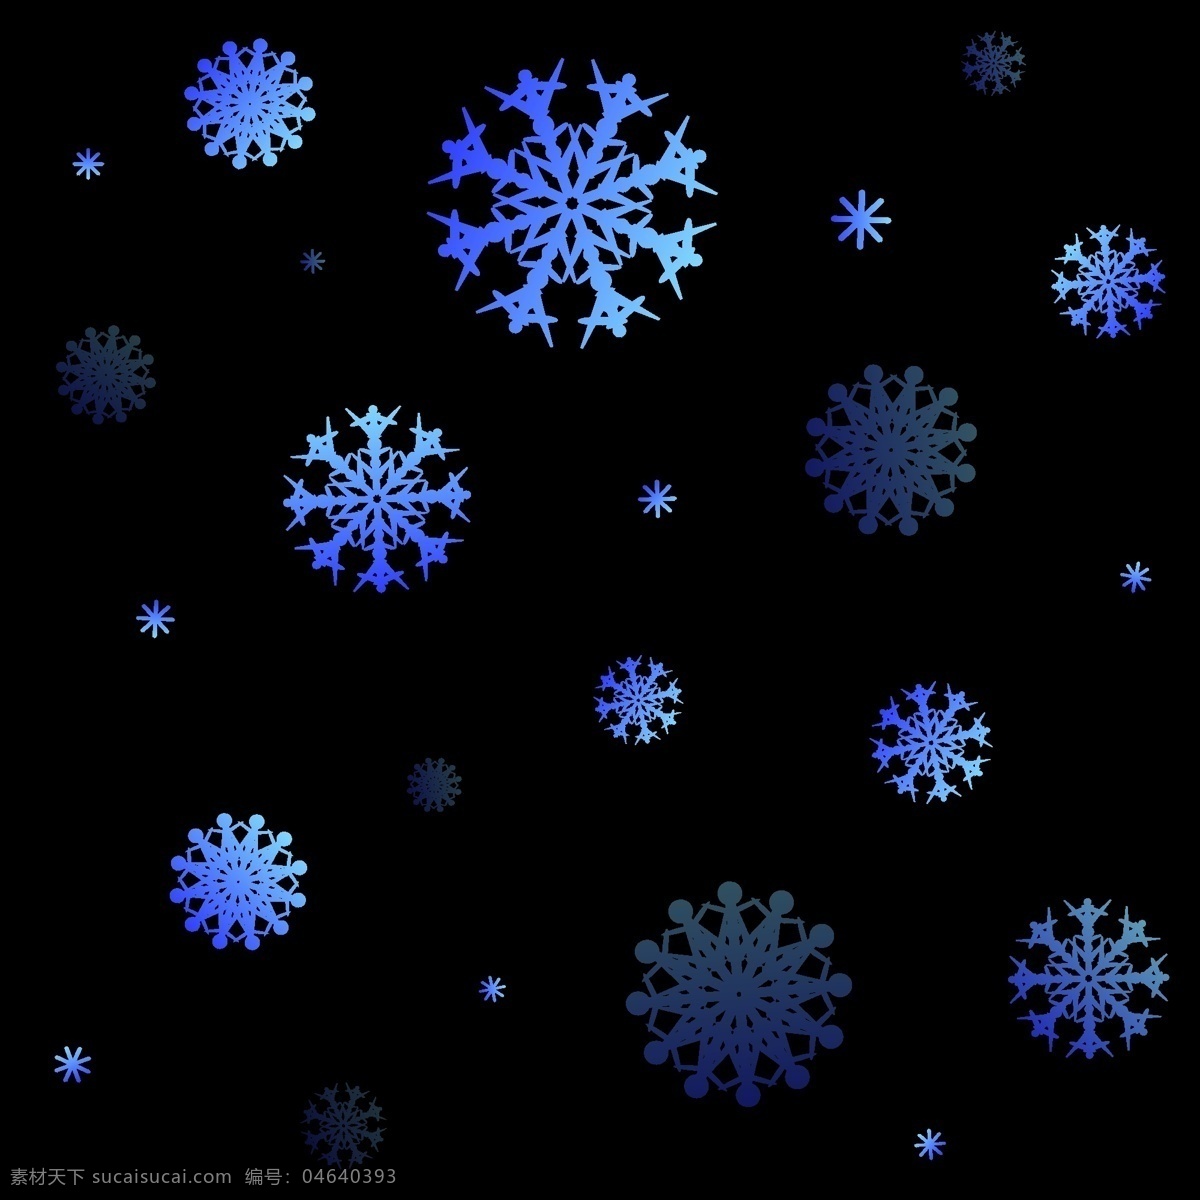 圣诞 矢量 蓝色 漂浮 雪花 元素 圣诞雪花 蓝色雪花 雪花漂浮 雪花元素 圣诞装饰